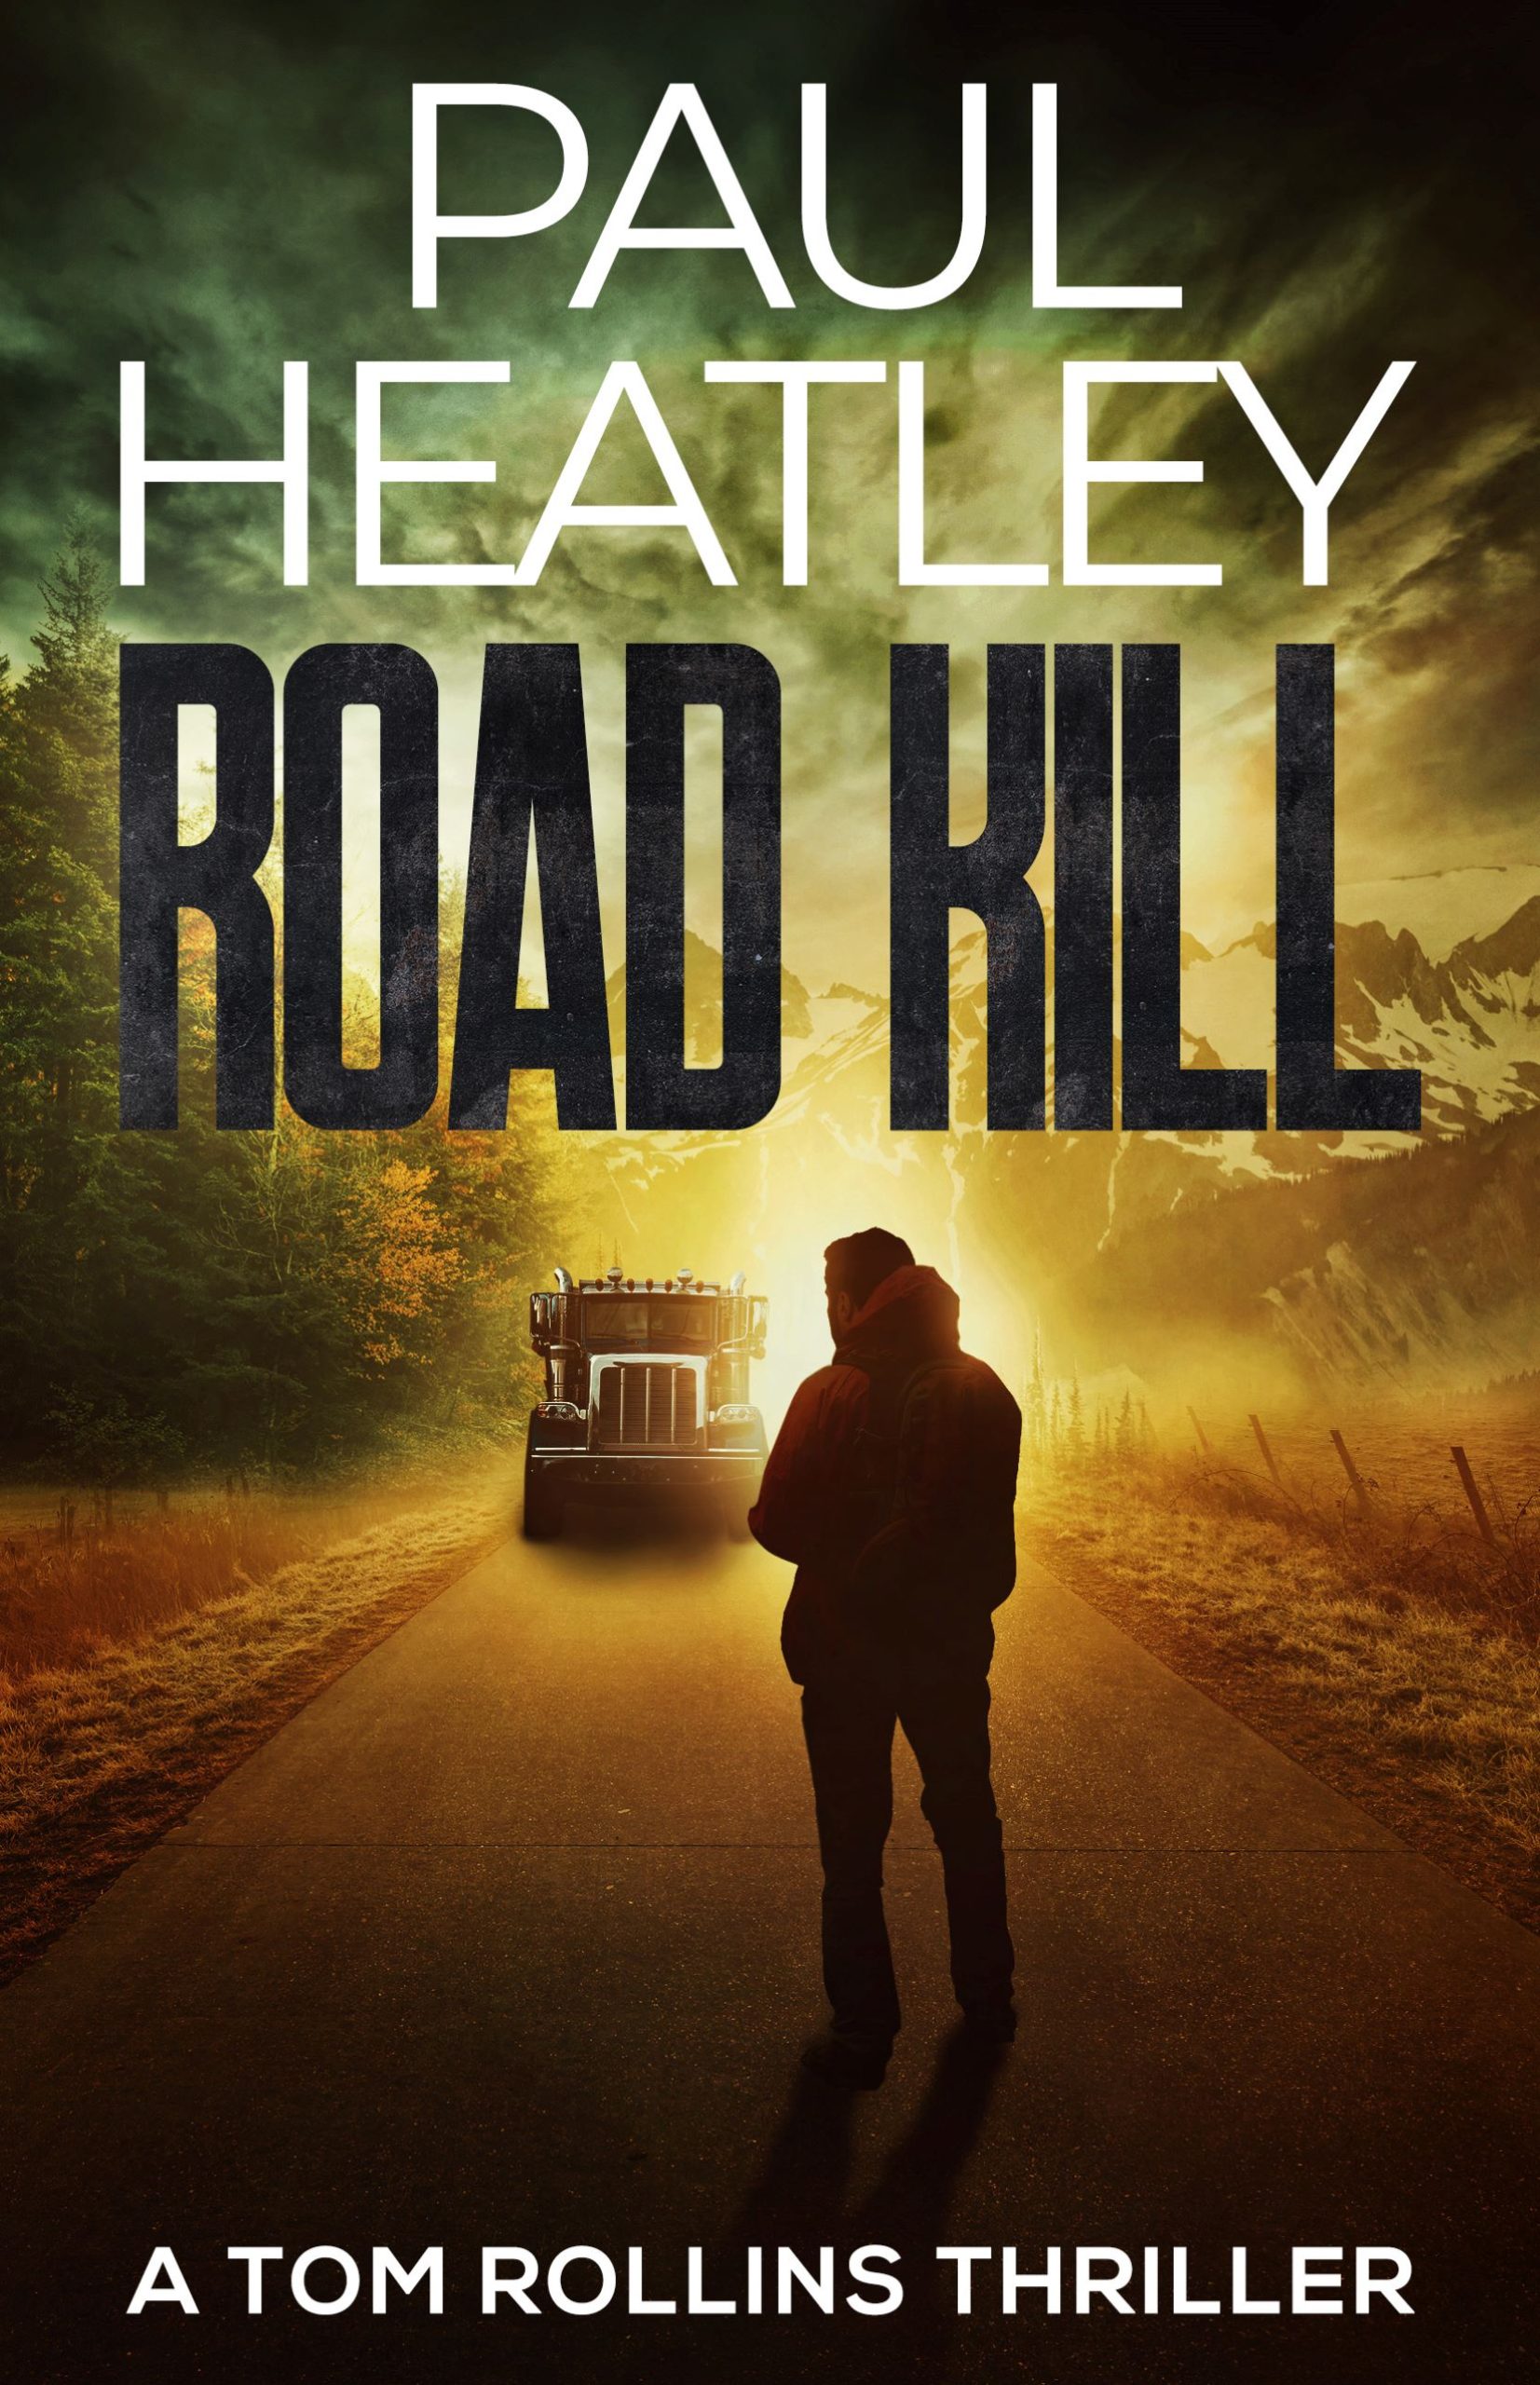 PAUL HEATLEY NEW RELEASE – ROAD KILL